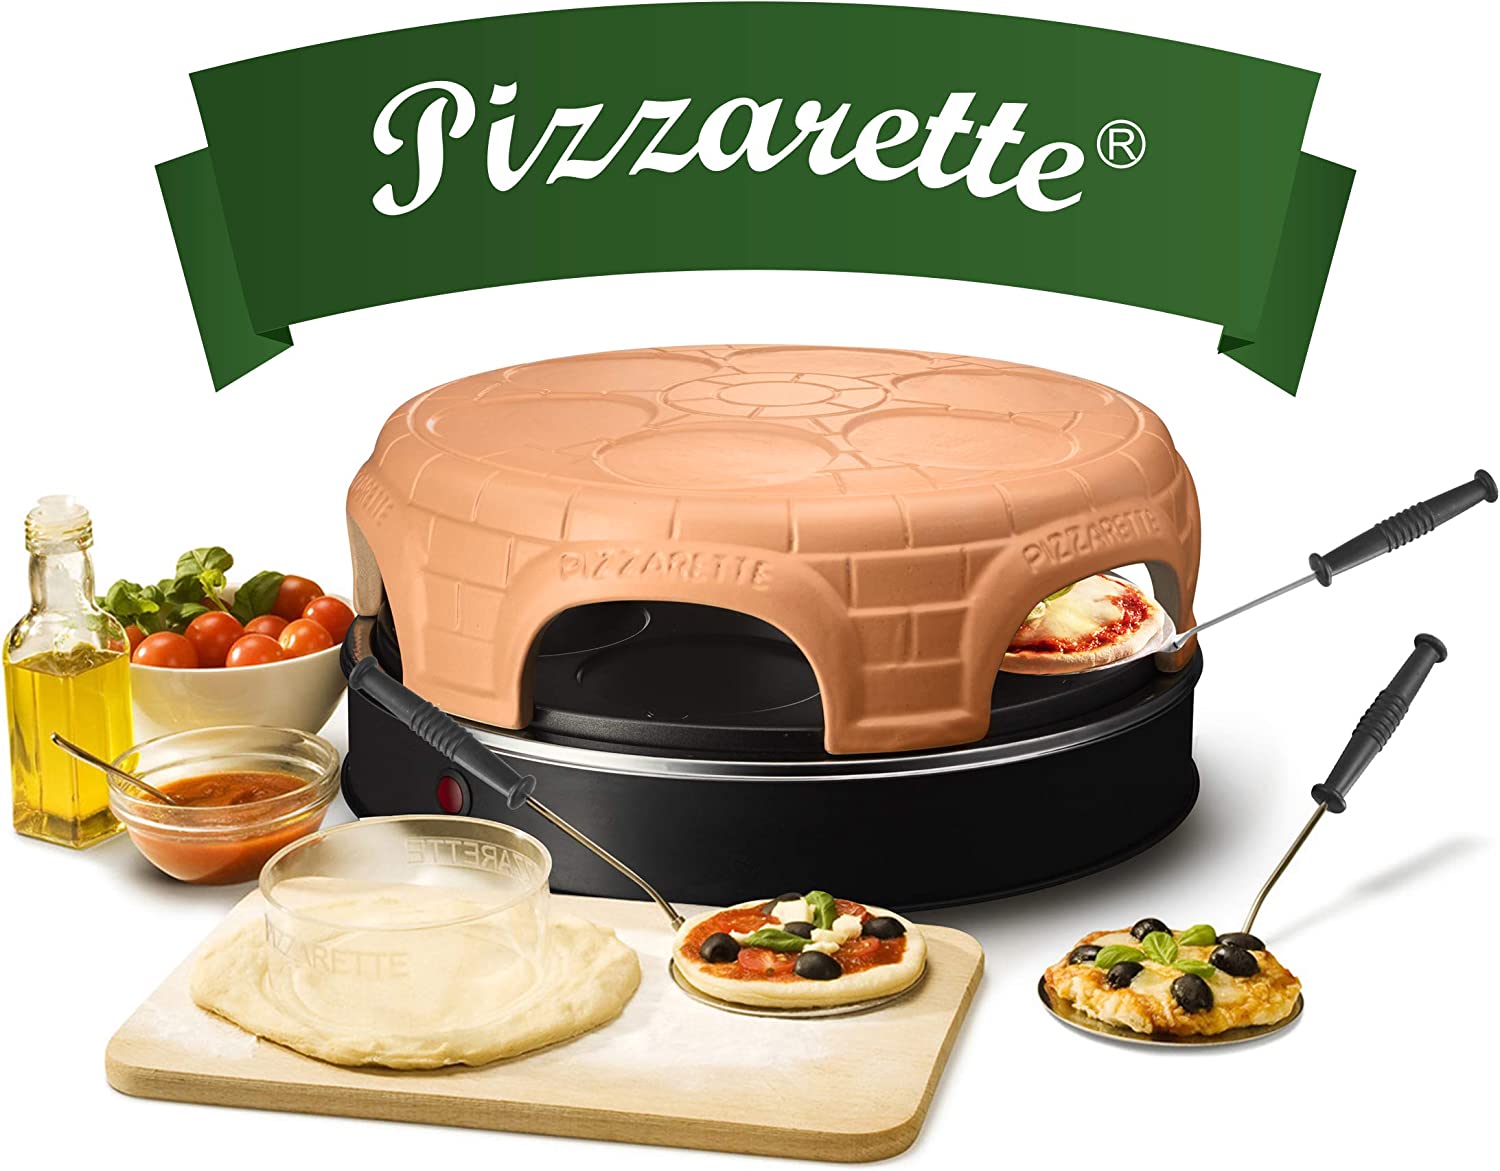 Emerio Pizza Oven, The Original Pizzarette